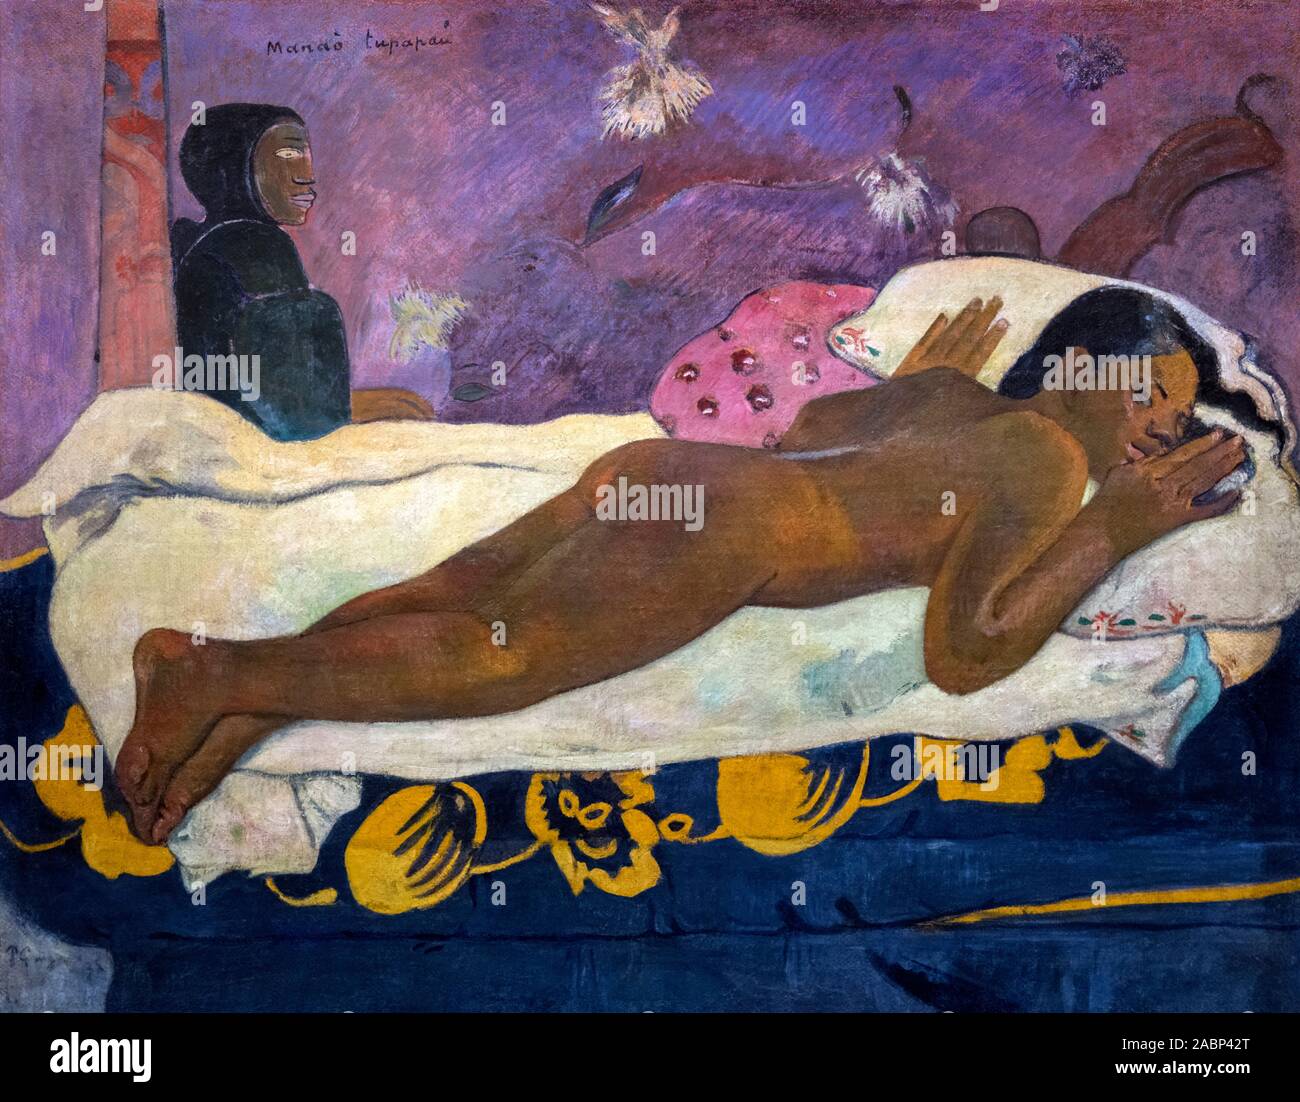 Il Manao tupapau (lo spirito dei Morti vegliano) da Paul Gauguin (1848-1903), olio su tela, 1892 Foto Stock